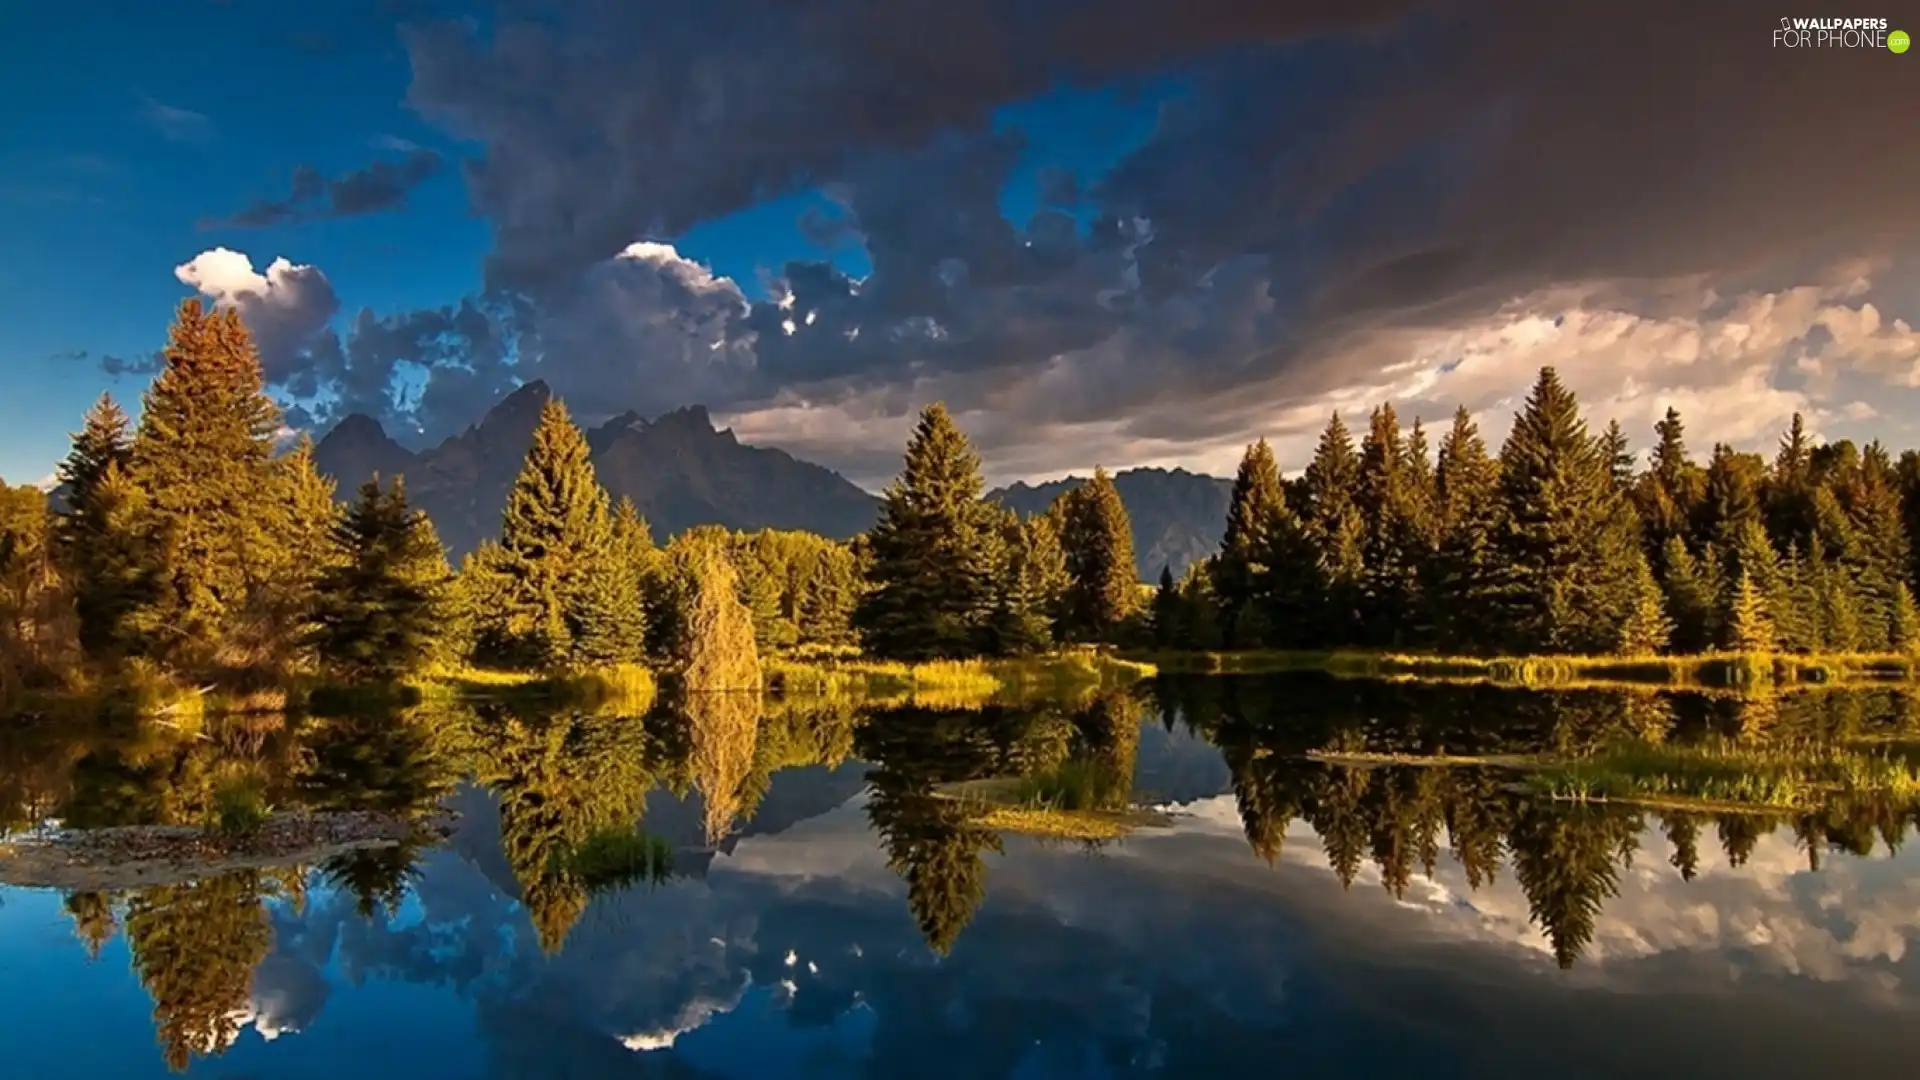 Mountains, reflection, Mirror, lake